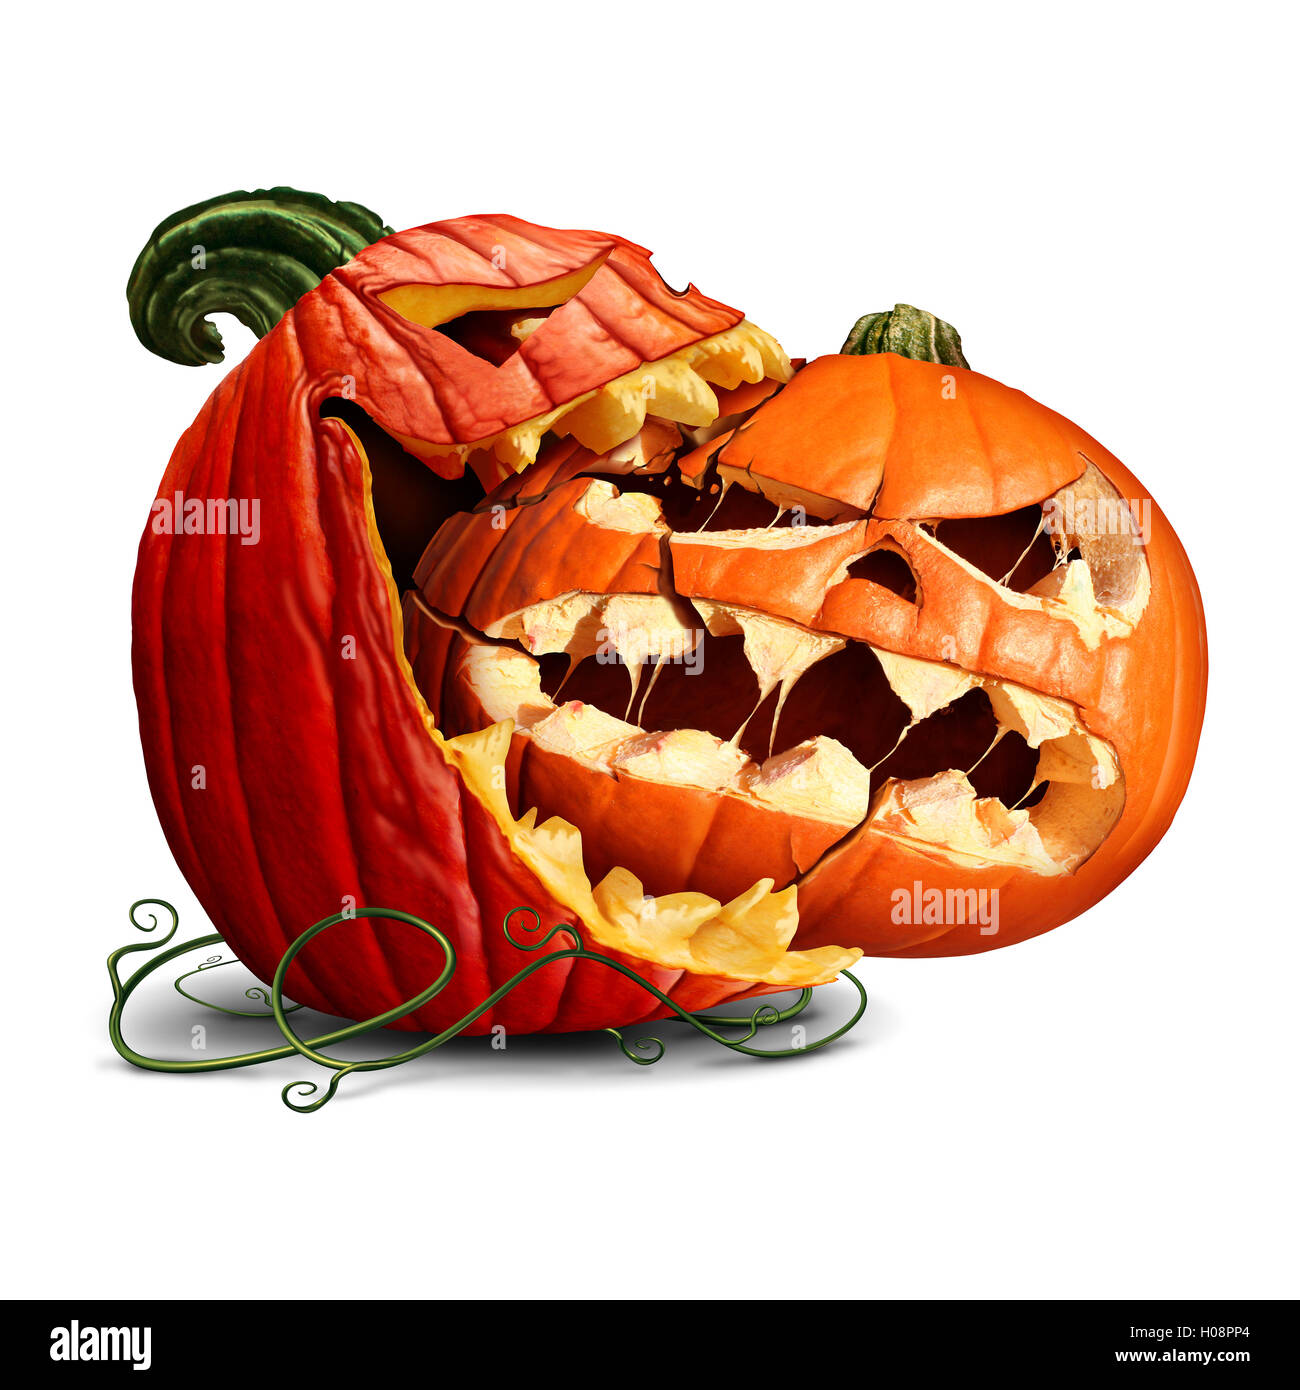 Kürbis Essen Symbol als eine dominante Halloween Kürbis zum Anbeißen aus einem anderen orange bösen Jack-o-Laterne oder ein Thanksgiving-Essen-Symbol mit 3D-Illustration Elemente. Stockfoto